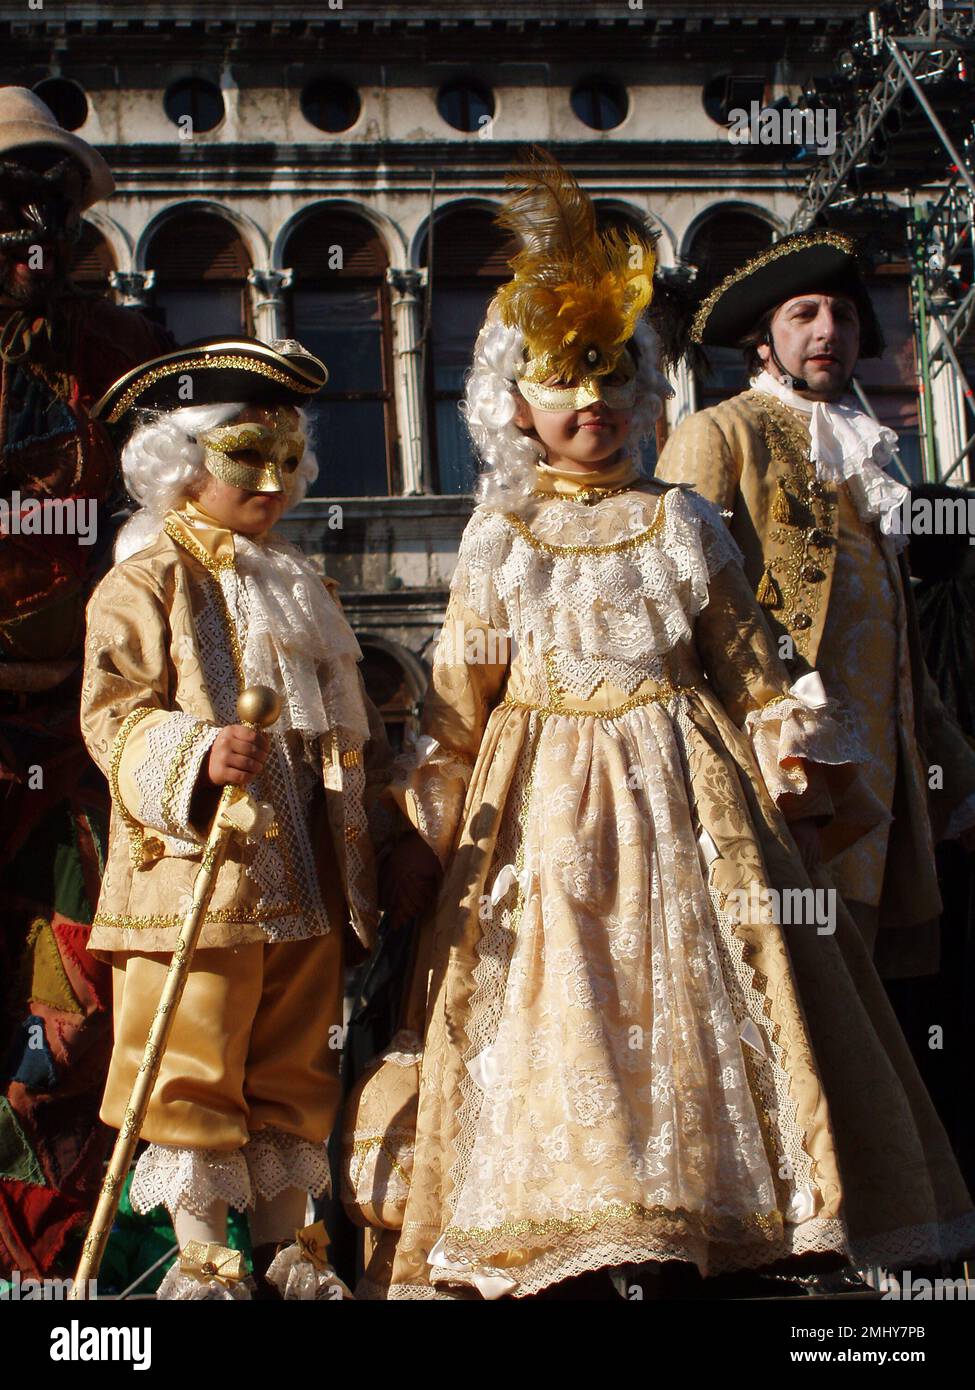 Carnevale di Venezia coppia di bambini in costume settecentesco. Venezia, Italia - 10 gennaio 2008 Foto Stock